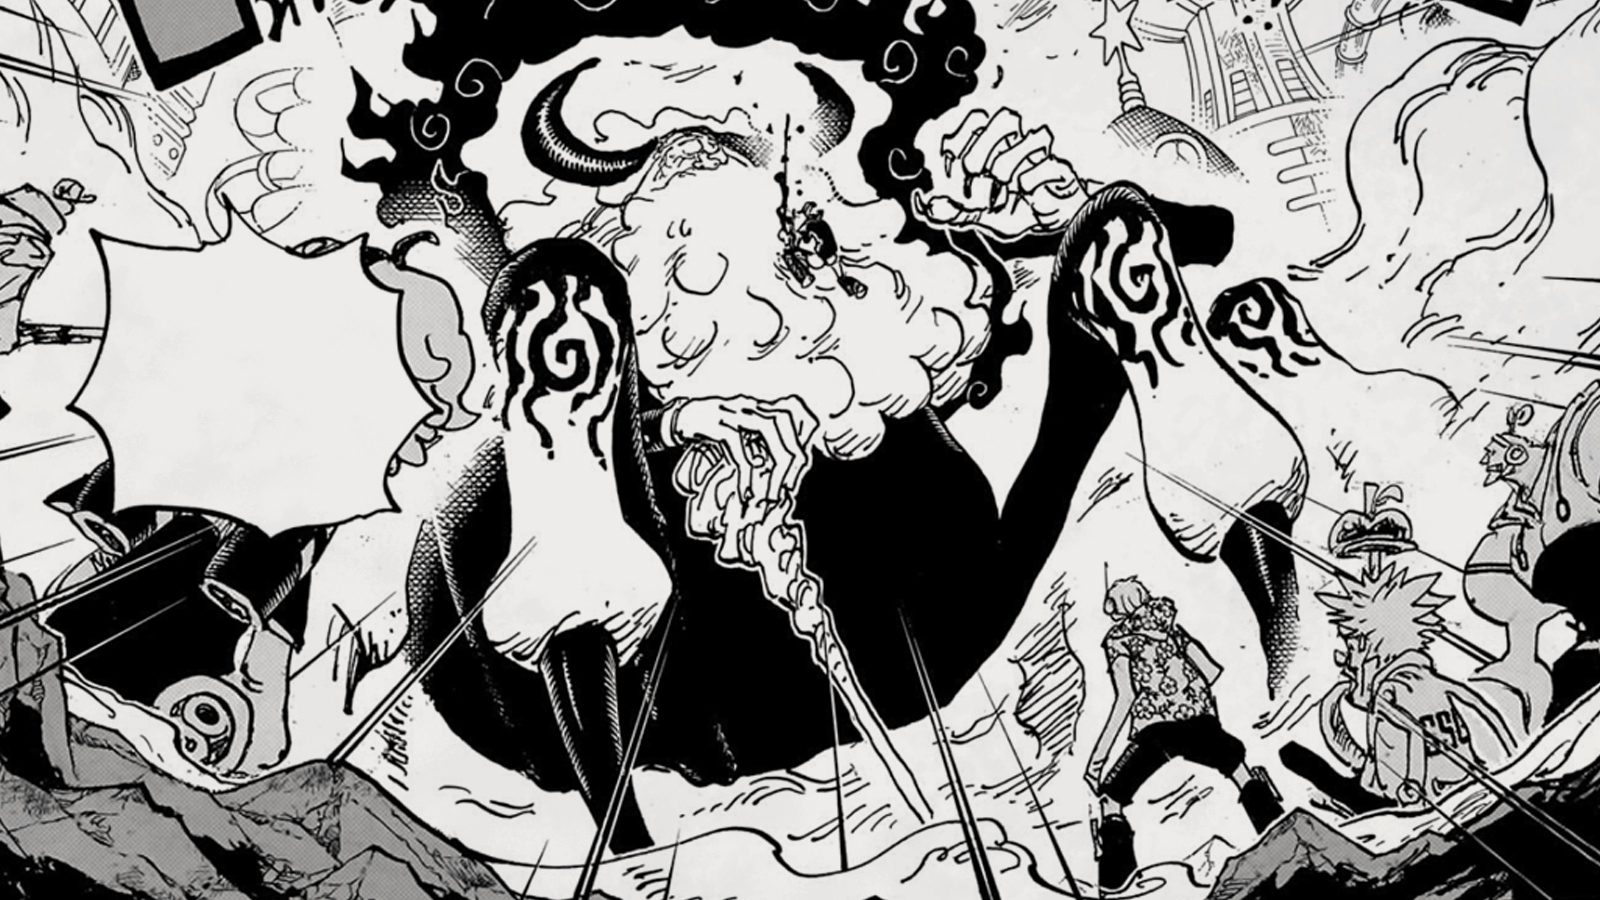 One Piece: Manga-Kapitel 1095 zeigt die fürchterliche Macht eines Weisen